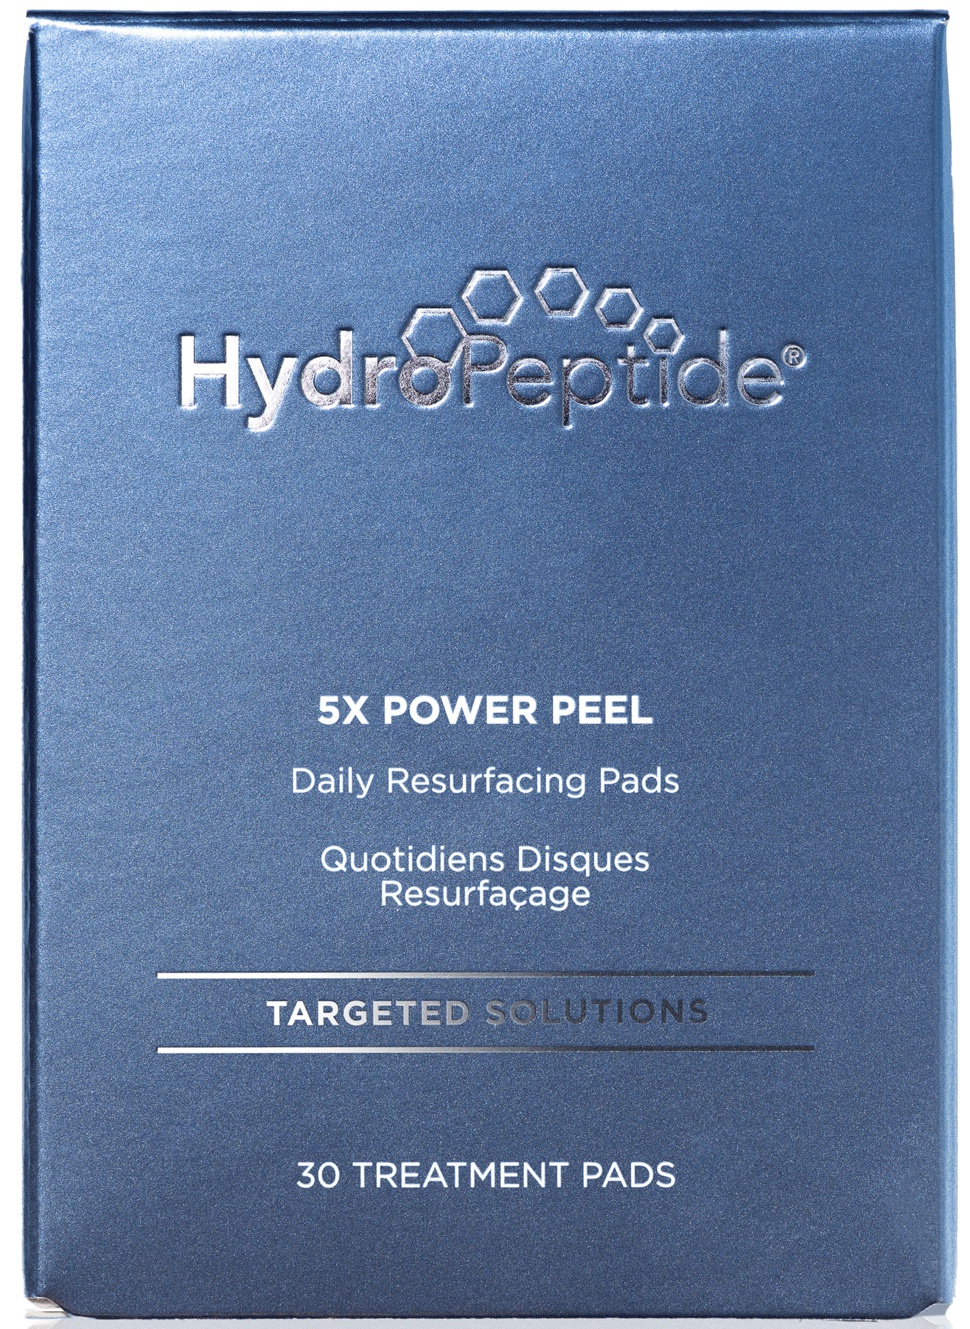 HydroPeptide 5x Power Peel